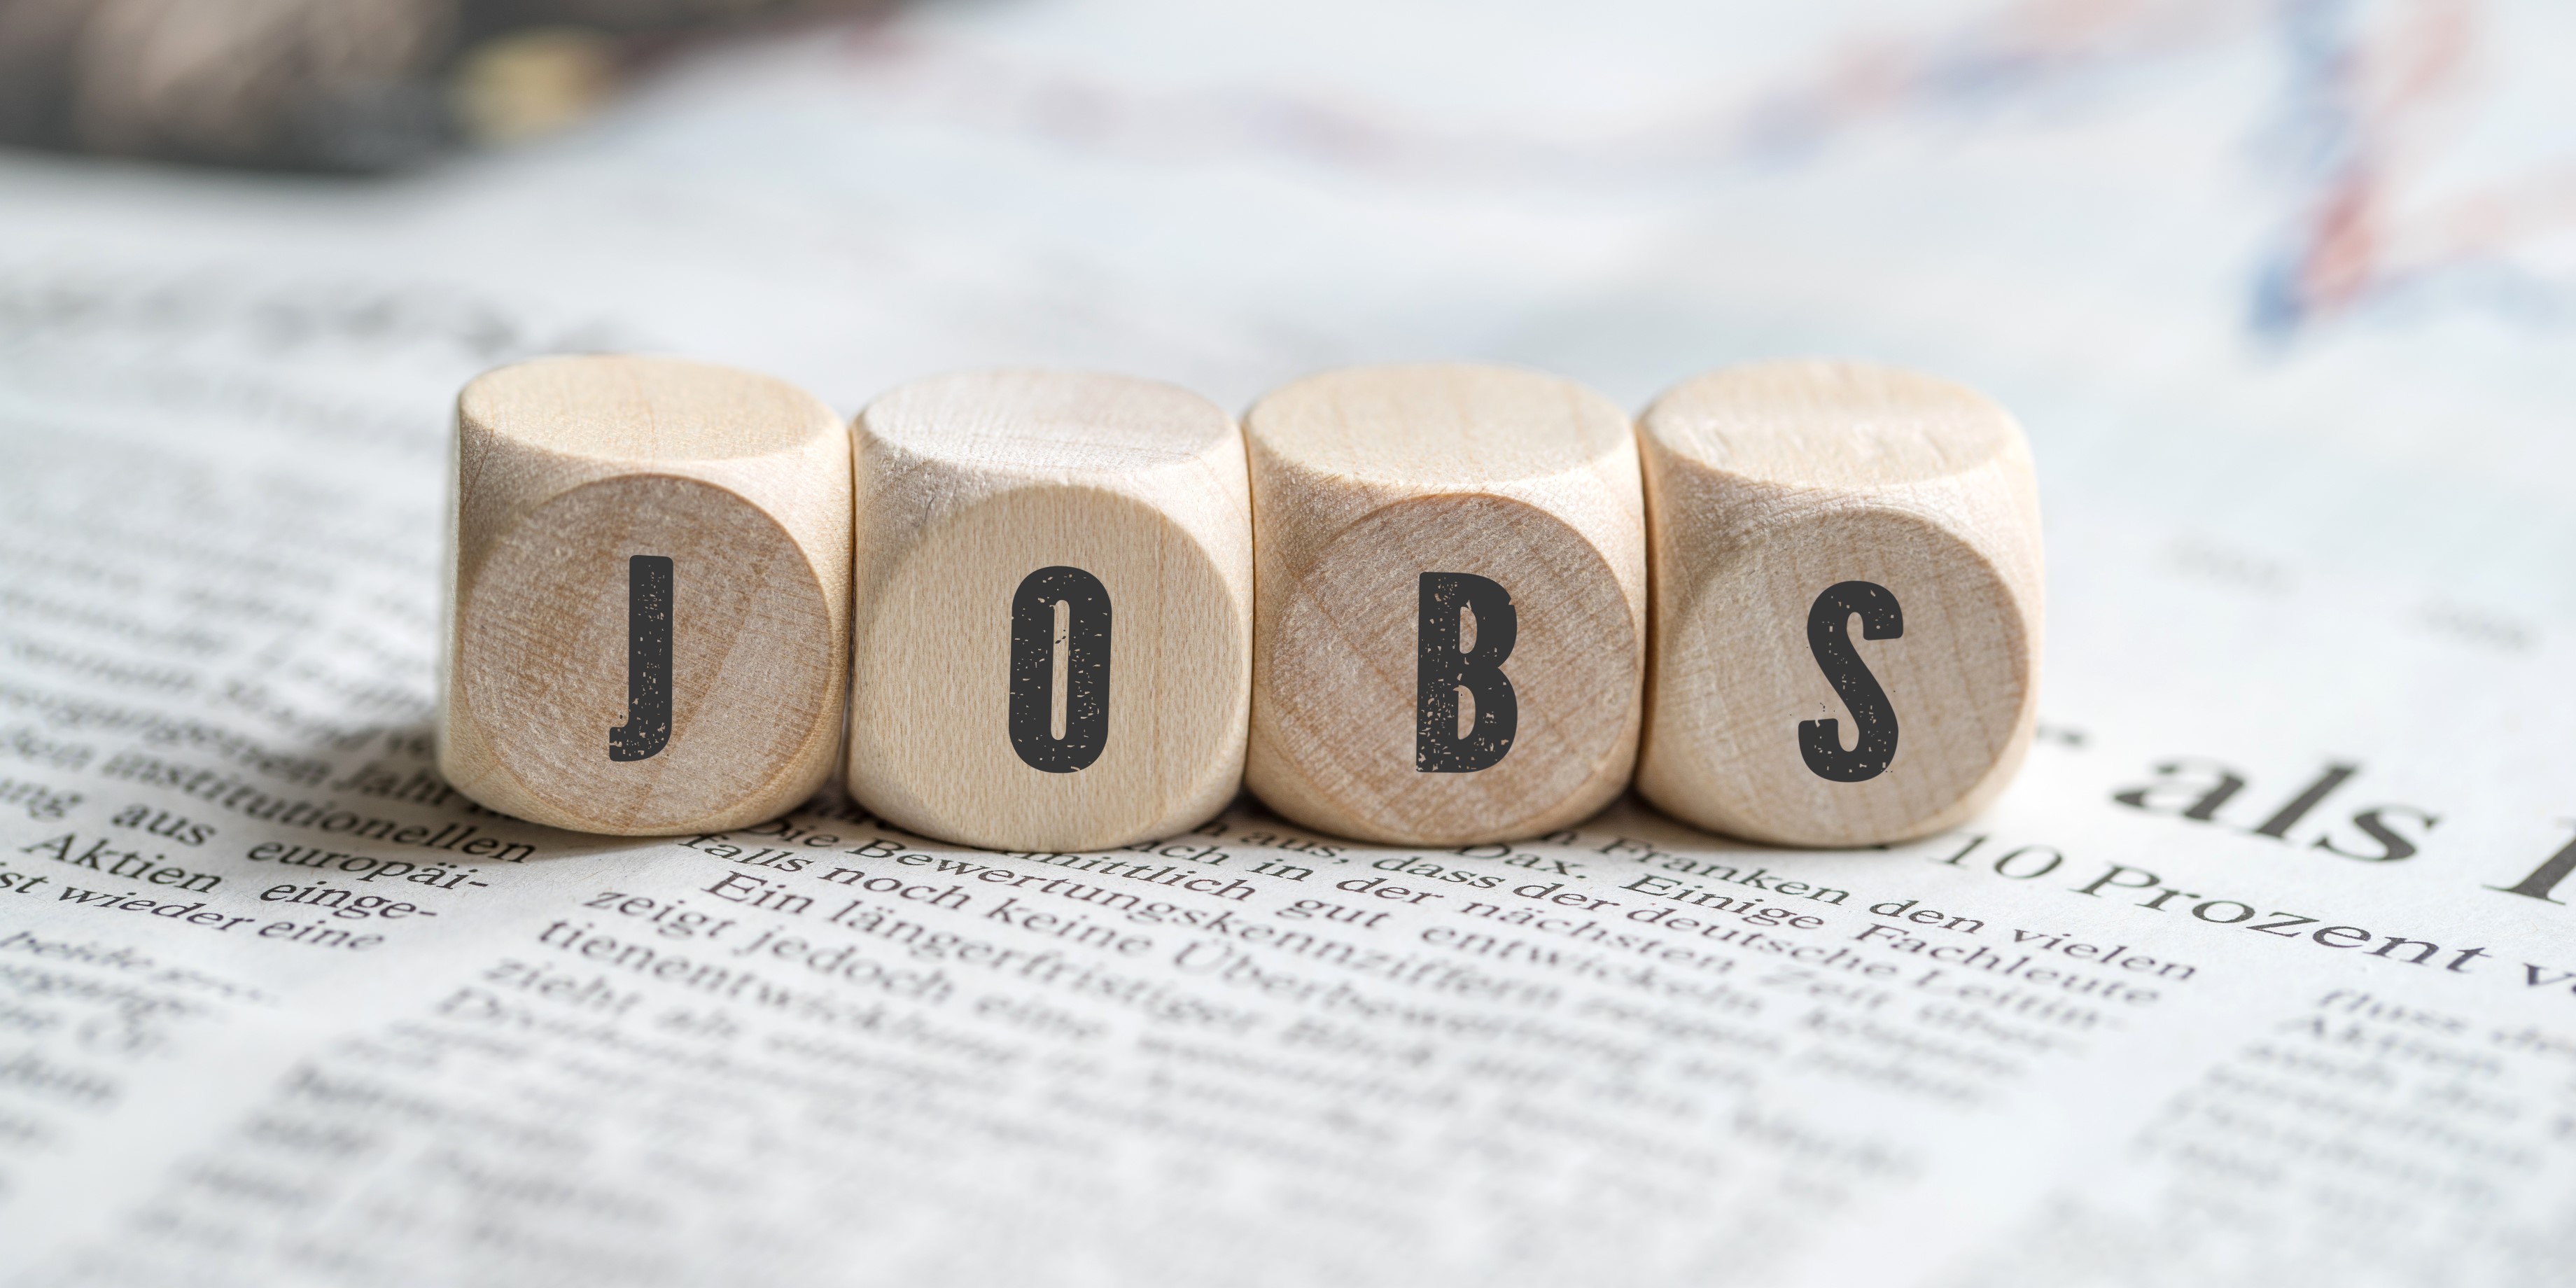 Vier Würfel die deren Beschriftung nebeneinander gelegt das Wort "Jobs" ergeben